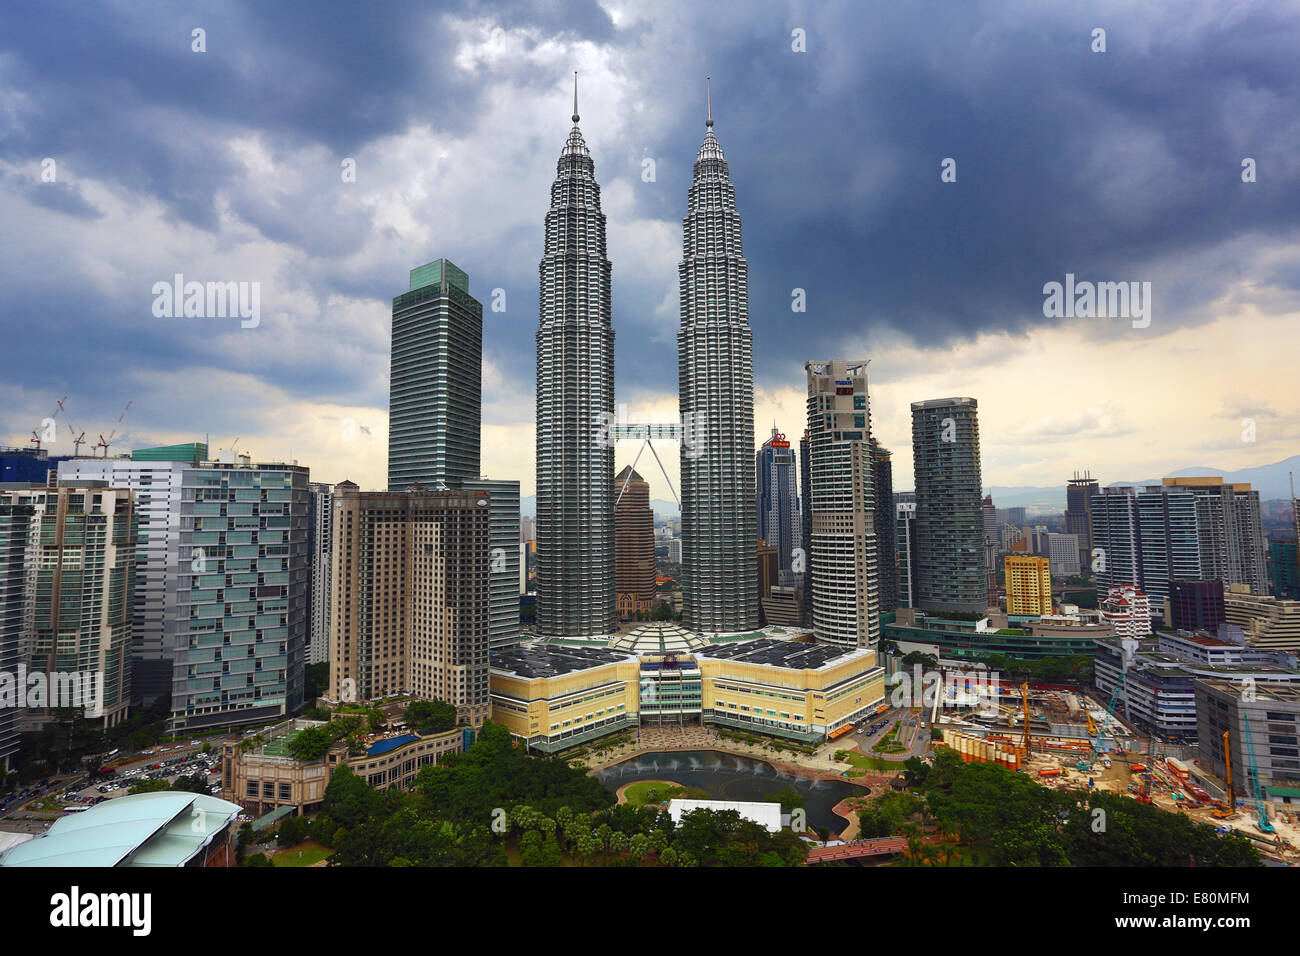 Petronas Twin Towers at KLCC in Kuala Lumpur, Malaysia Stock Photo